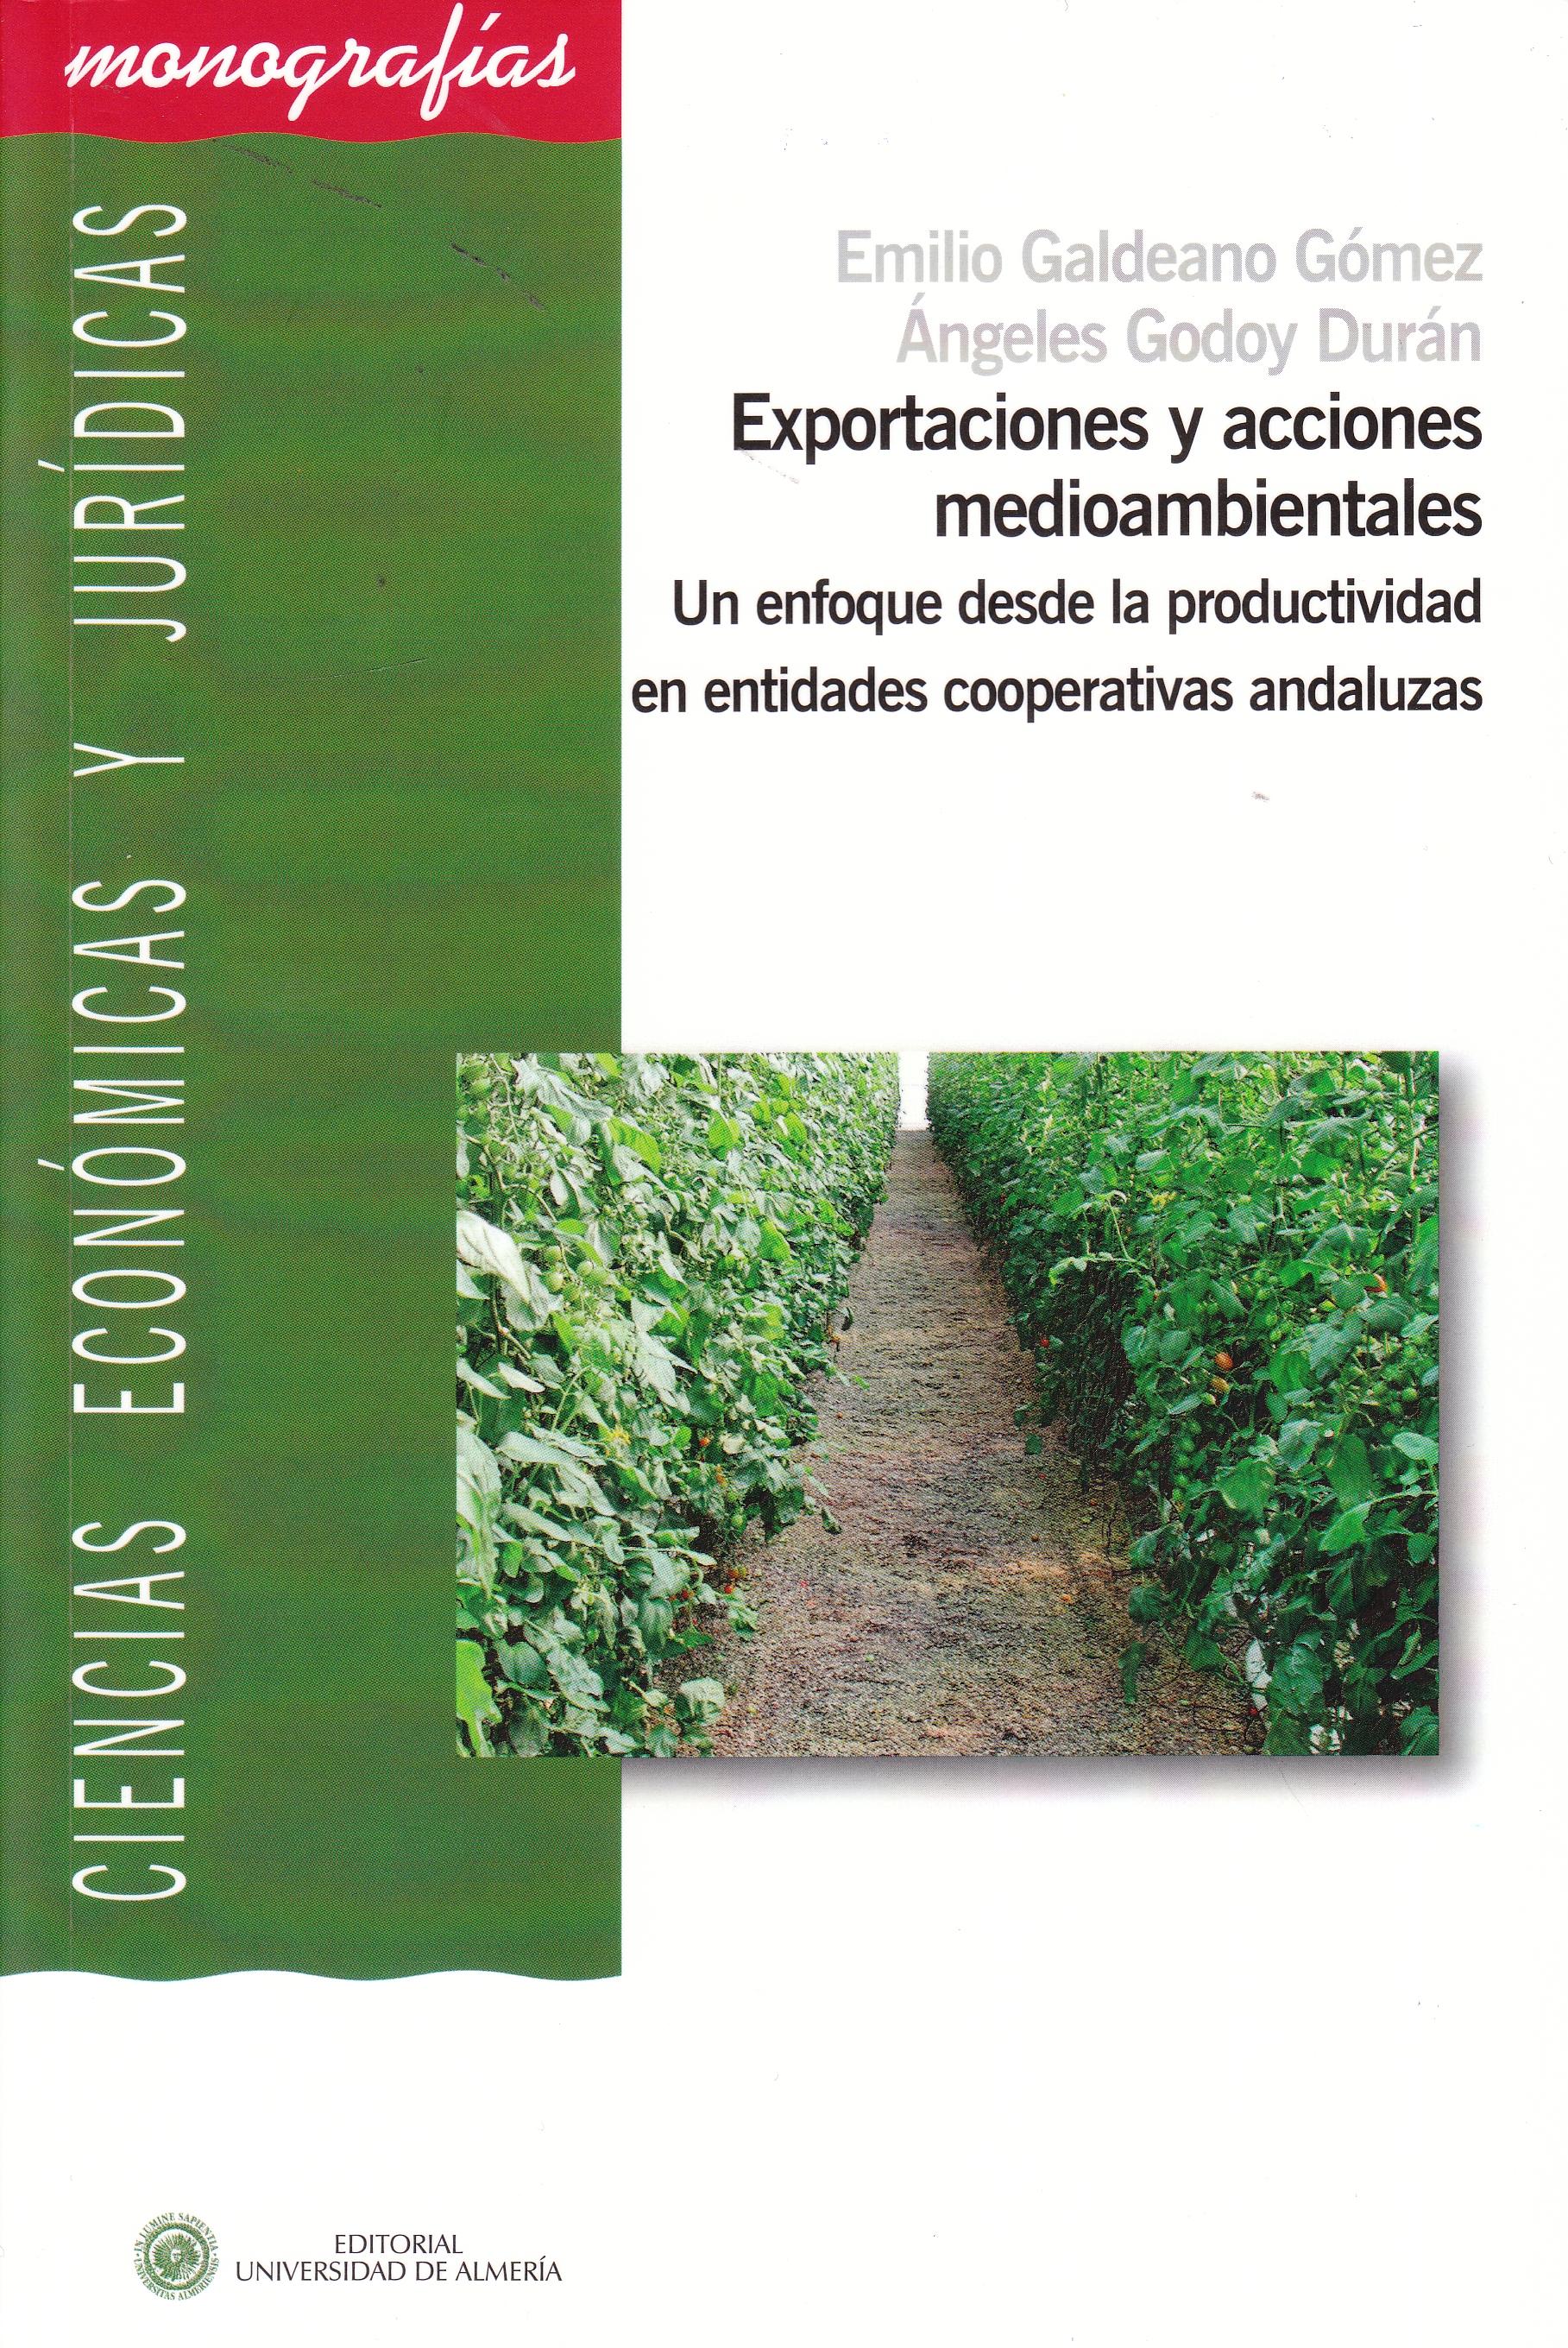 Expotaciones y acciones medioambientales "Un enfoque desde la productividad en entidades cooperativas anda"